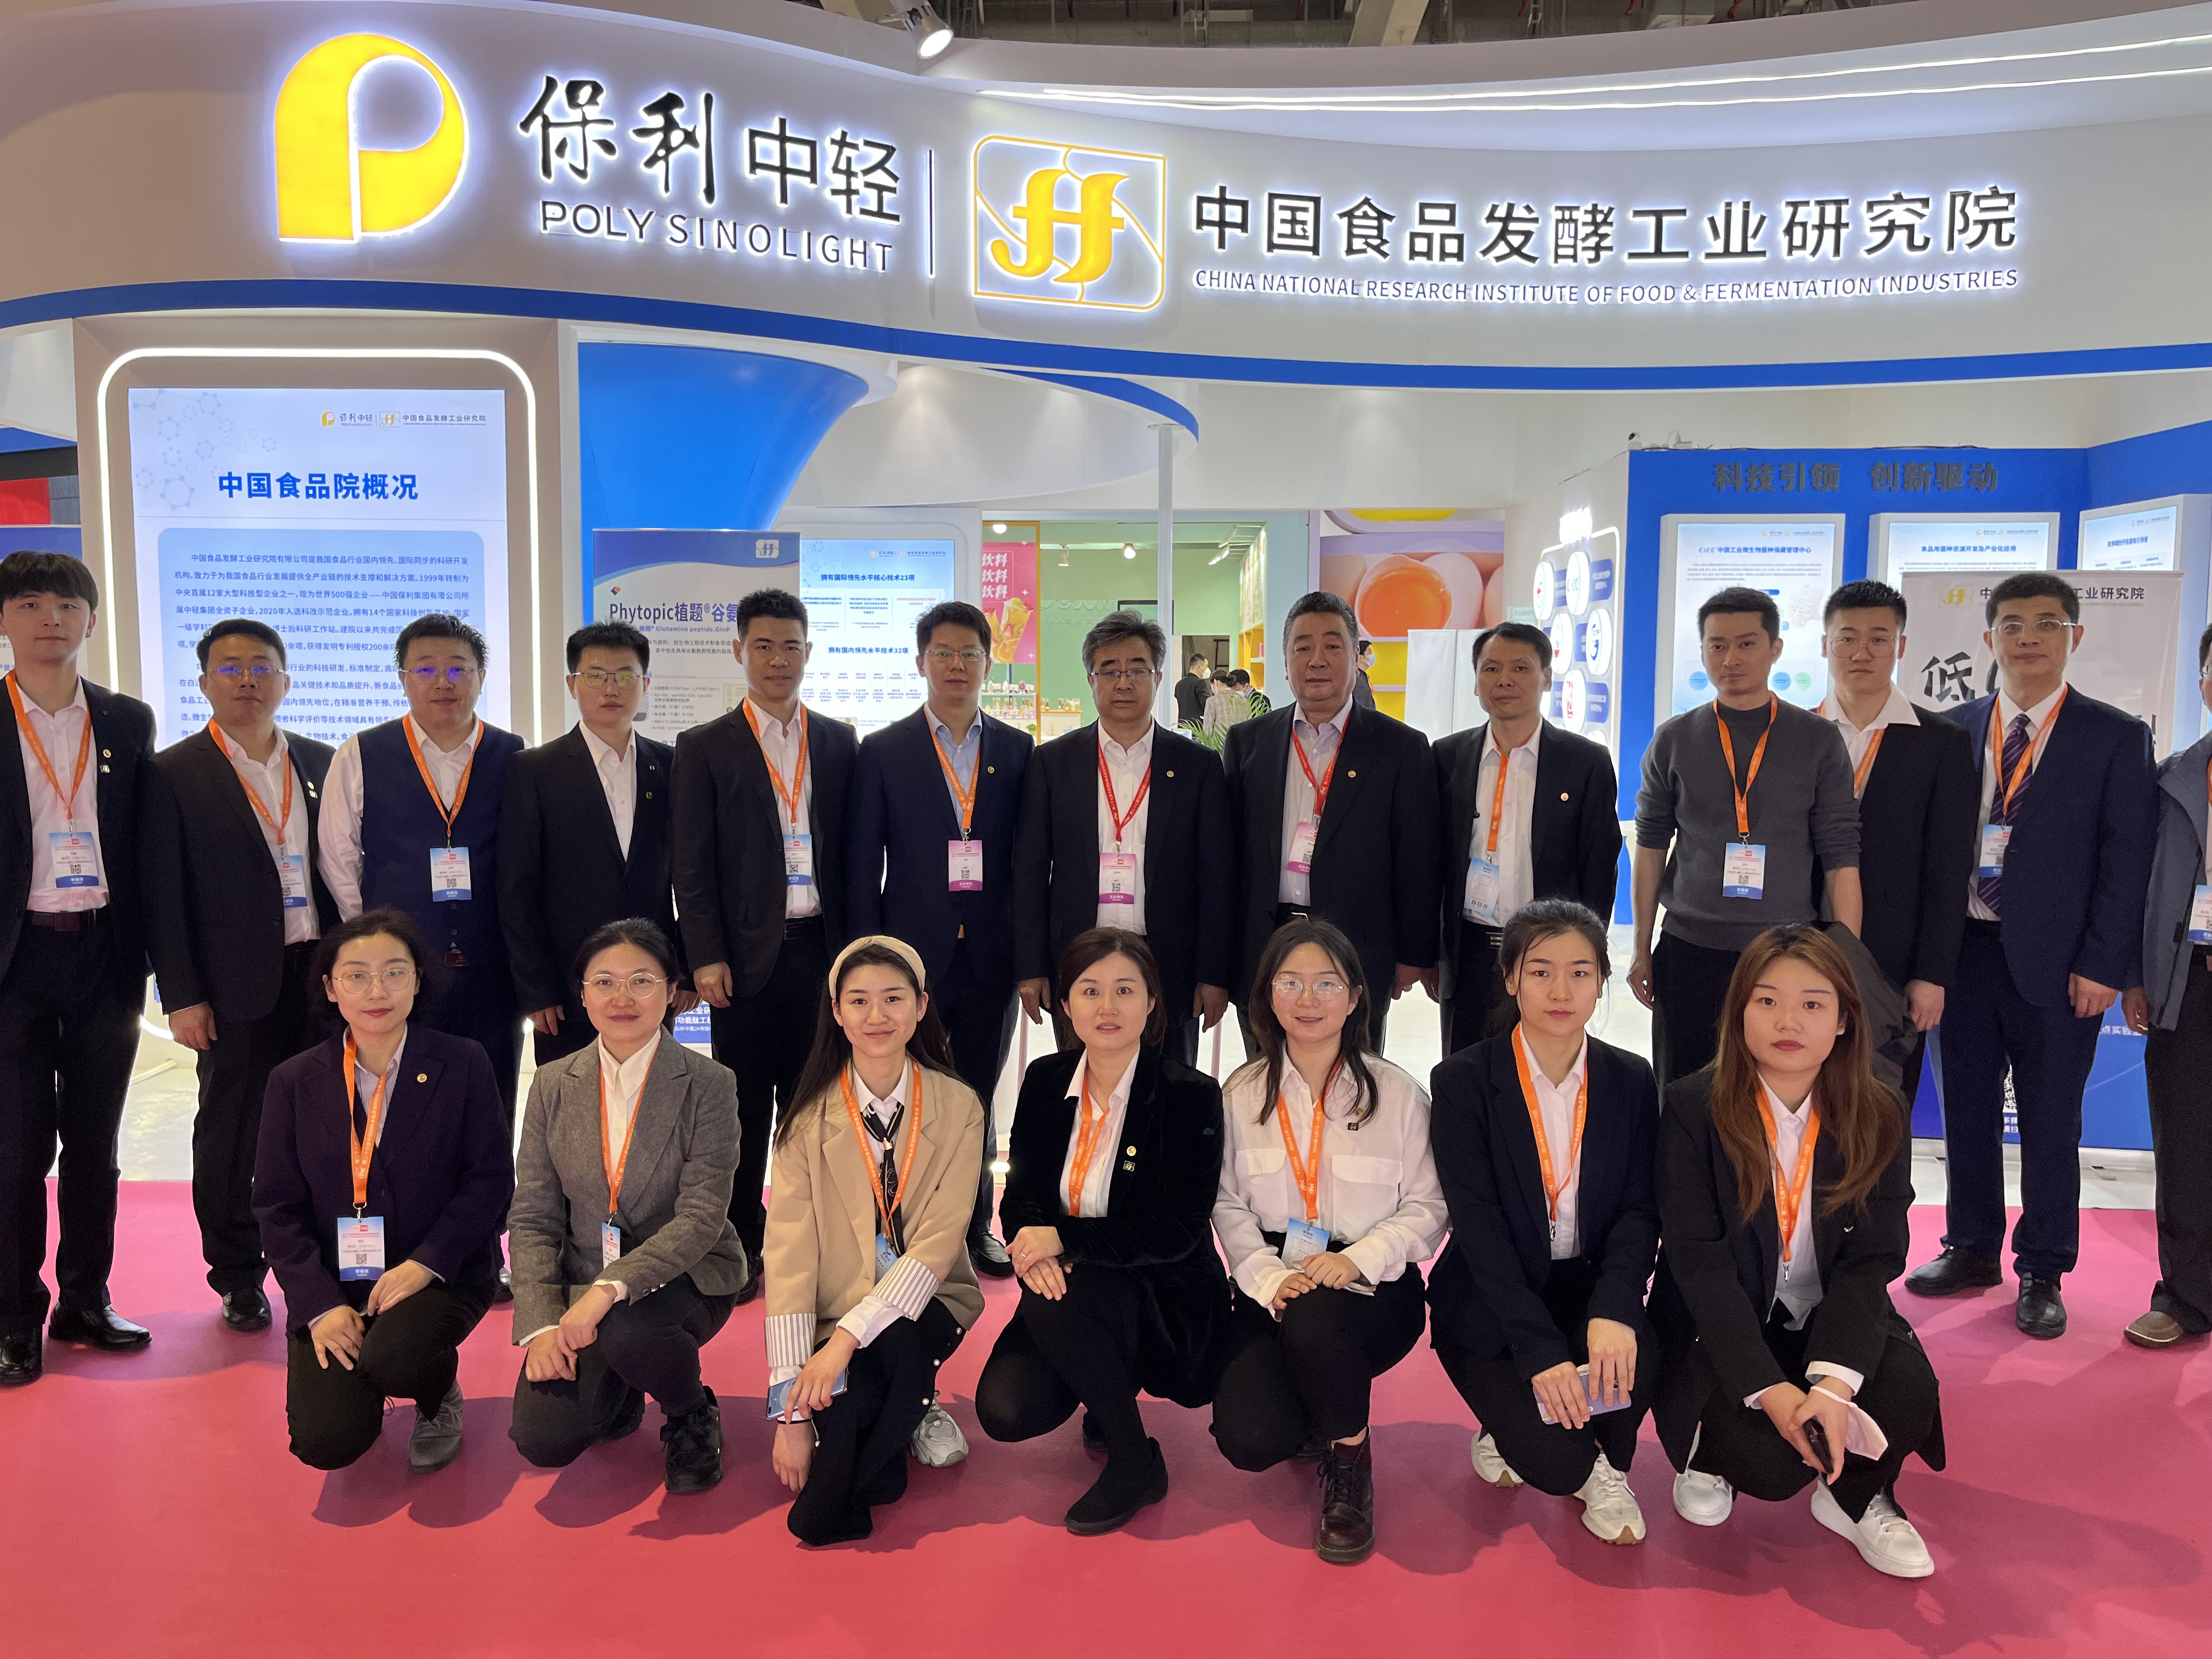 安胜杰出席第二十六届中国国际食品添加剂和配料展览会及签约仪式